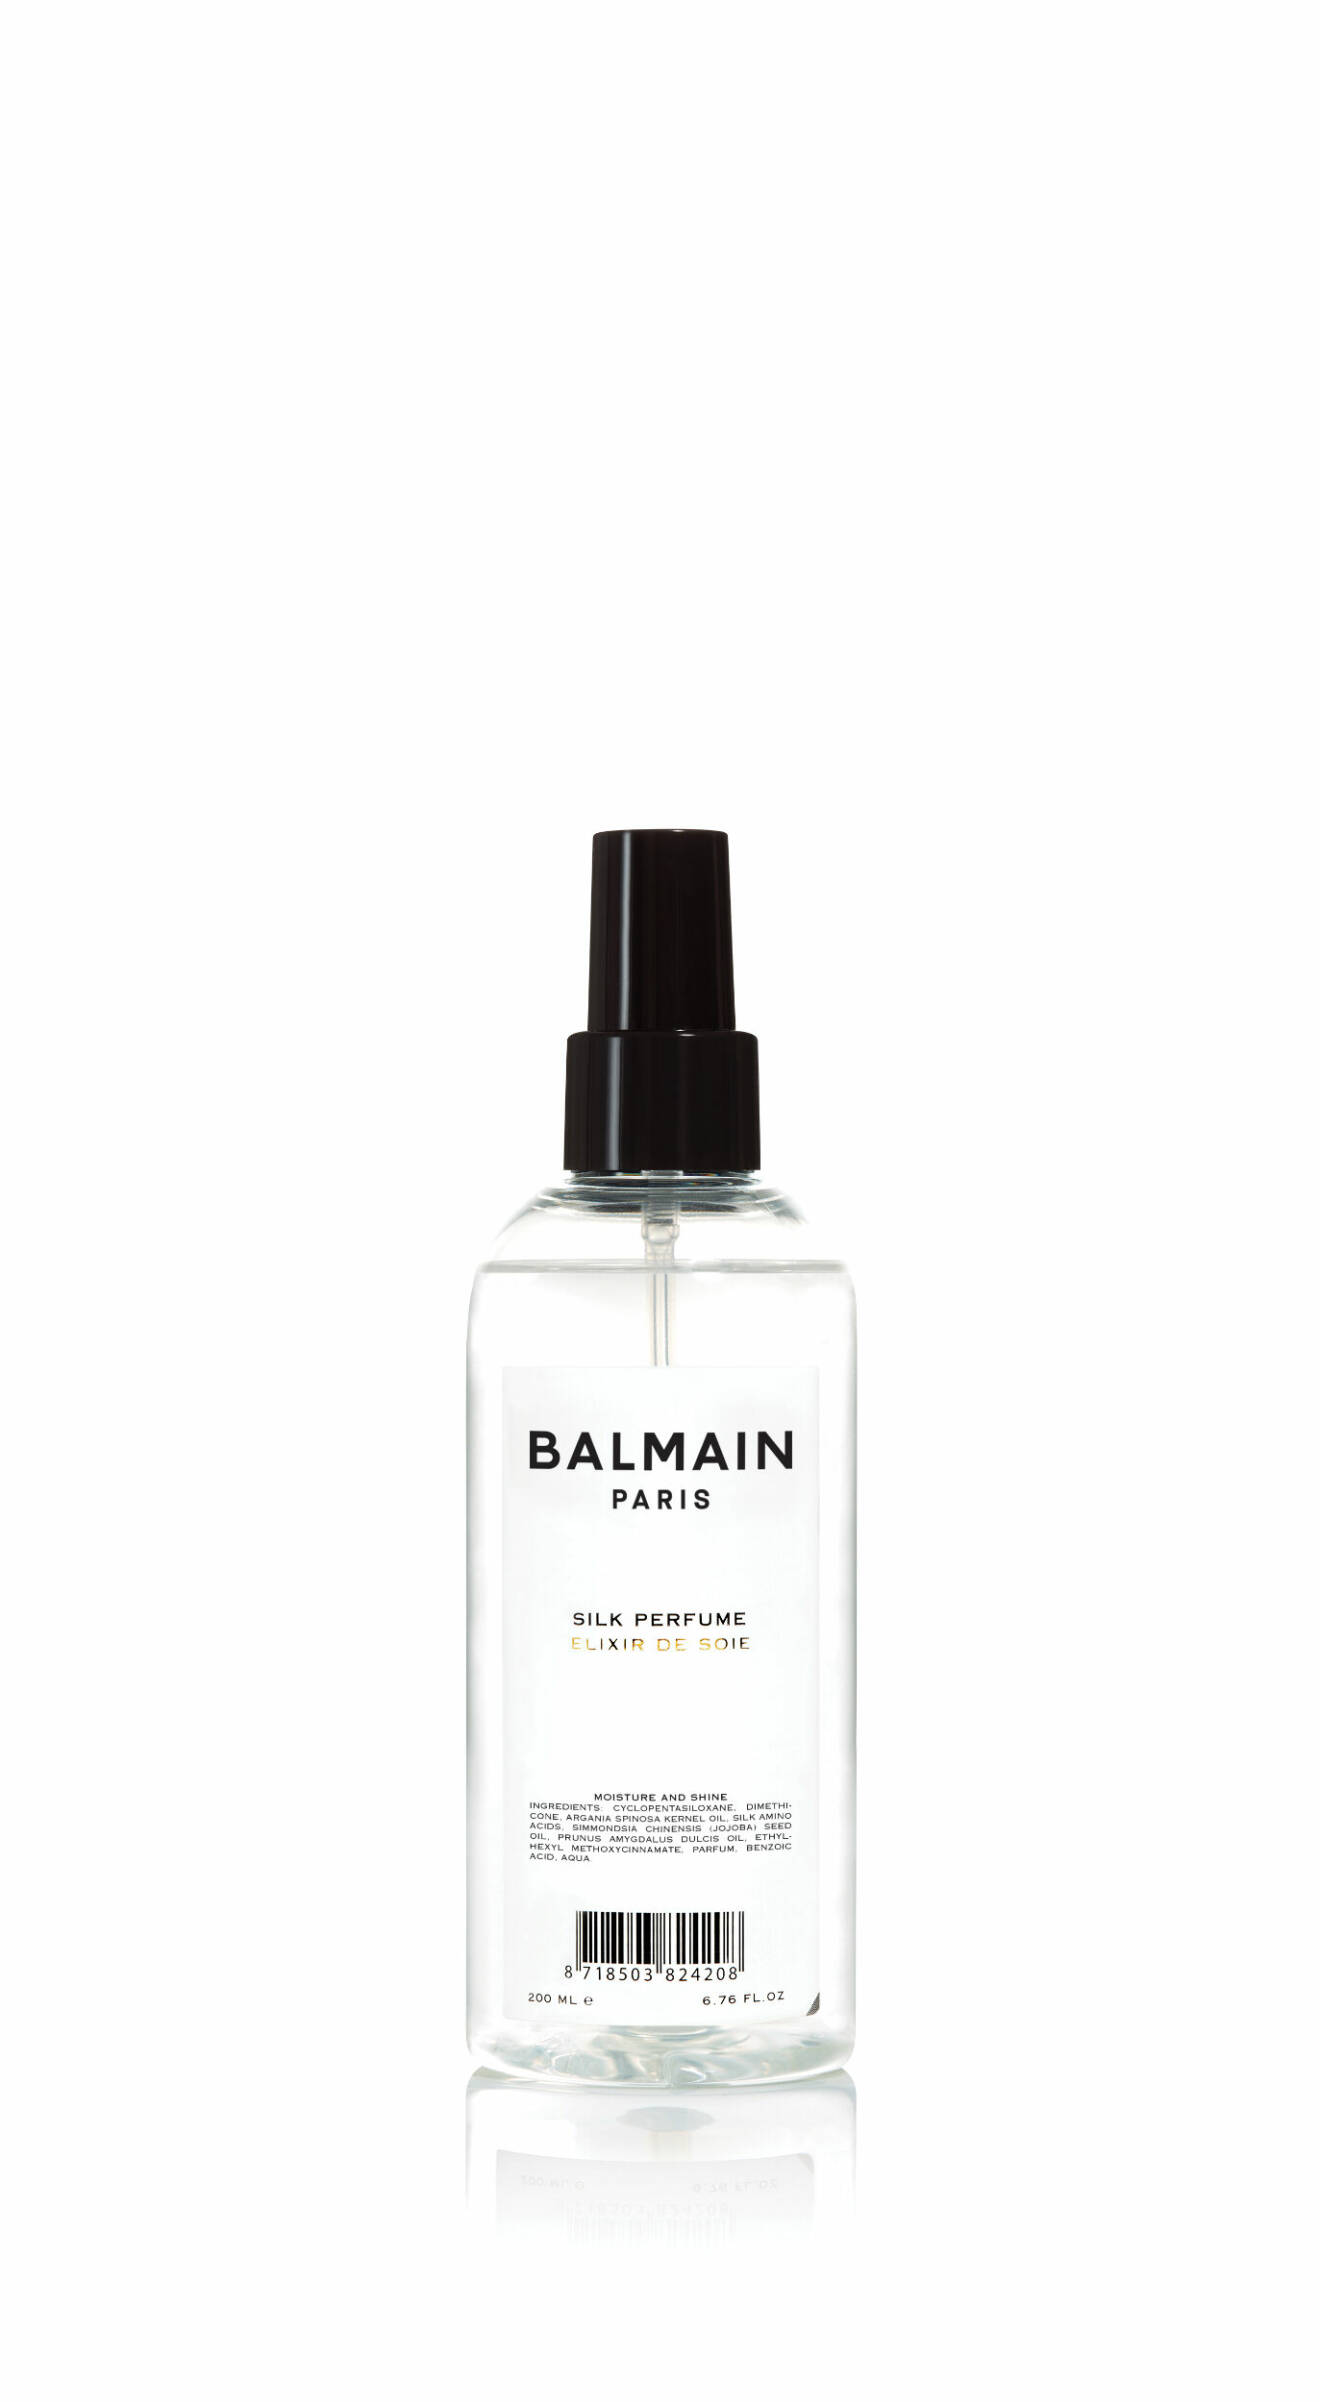 Silk perfume, hårparfym av Balmain